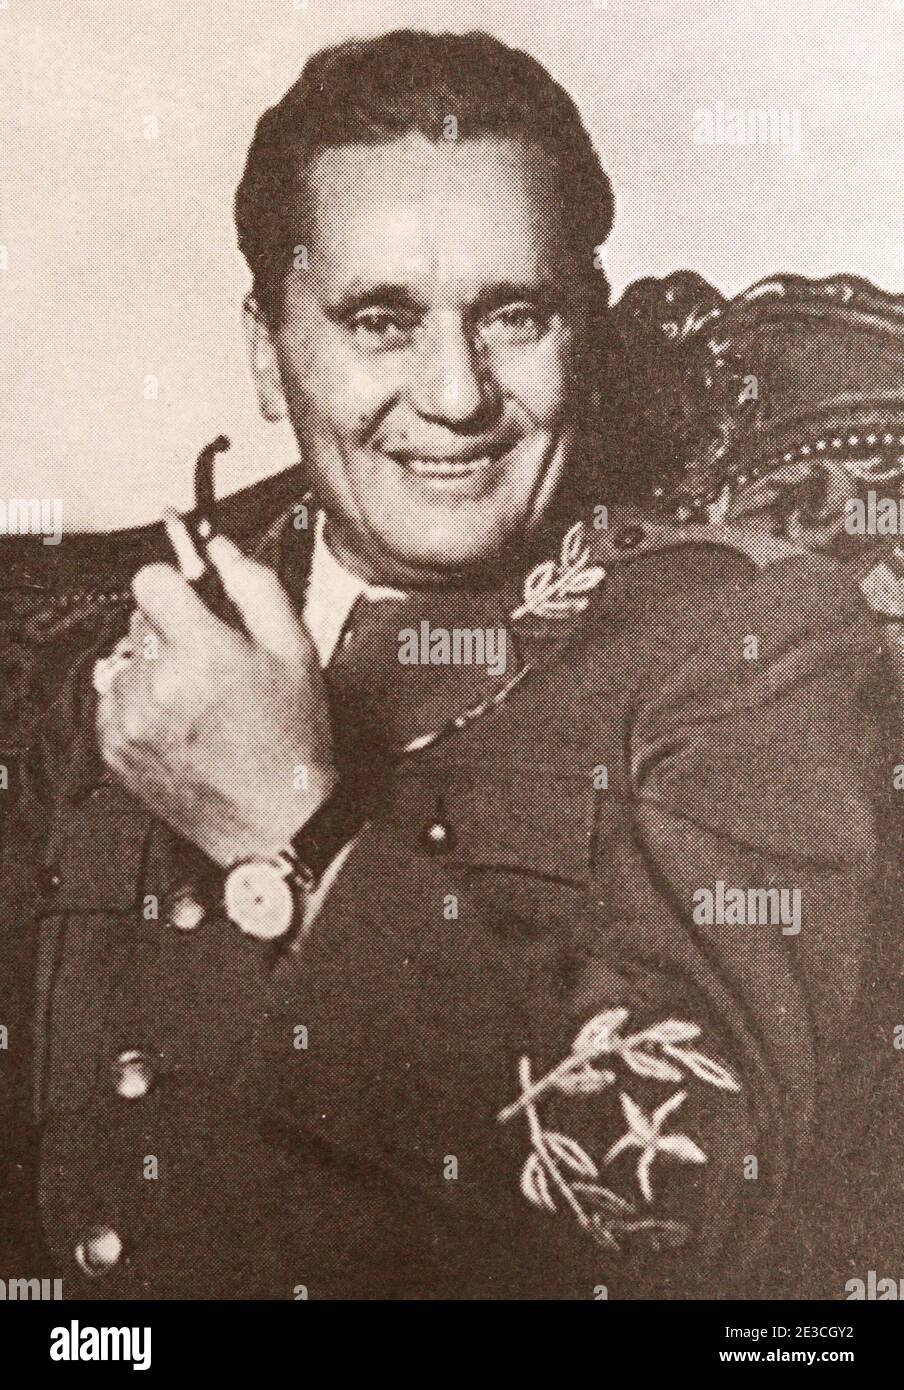 Josip Broz Tito. Josip Broz Tito war ein jugoslawischer kommunistischer Revolutionär und Staatsmann, der von 1943 bis zu seinem Tod 1980 in verschiedenen Rollen diente. Während des Zweiten Weltkriegs war er der Führer der Partisanen, die oft als die effektivste Widerstandsbewegung im besetzten Europa angesehen wurden. Vom 14. Januar 1953 bis zu seinem Tod am 4. Mai 1980 war er Präsident der Sozialistischen Bundesrepublik Jugoslawien. Stockfoto